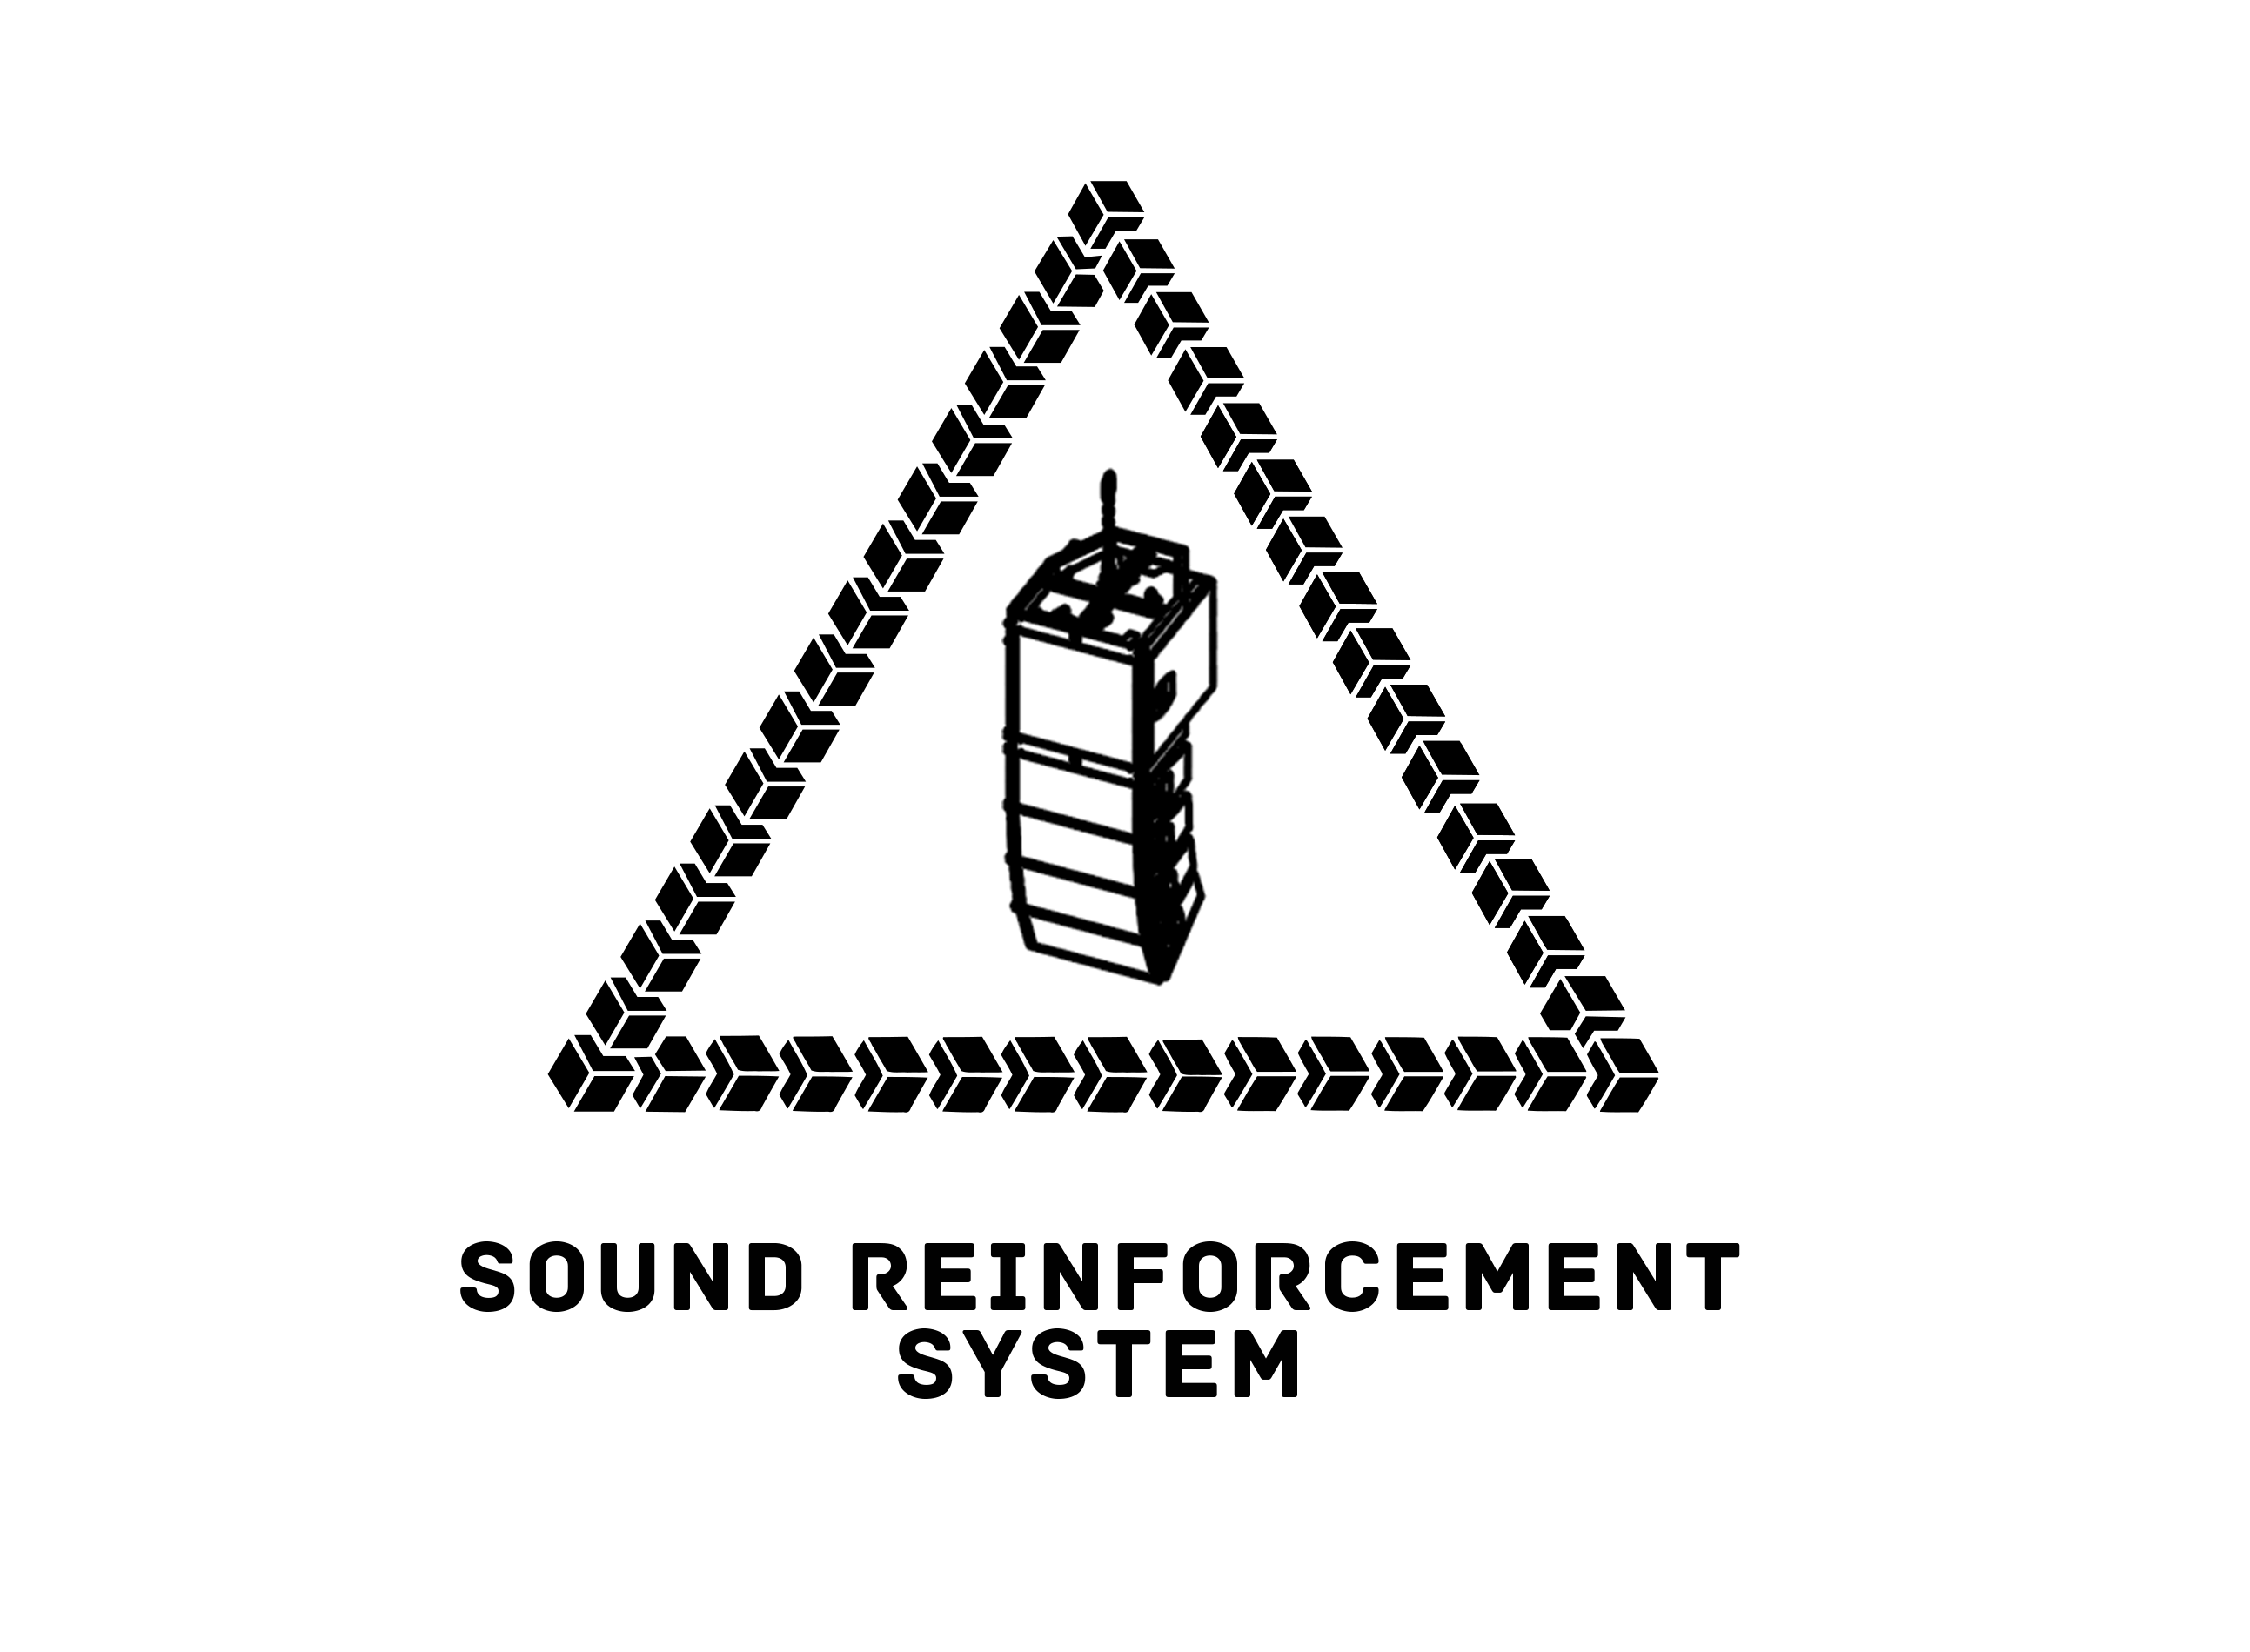 SOUND REINFORCEMENT SYSTEM